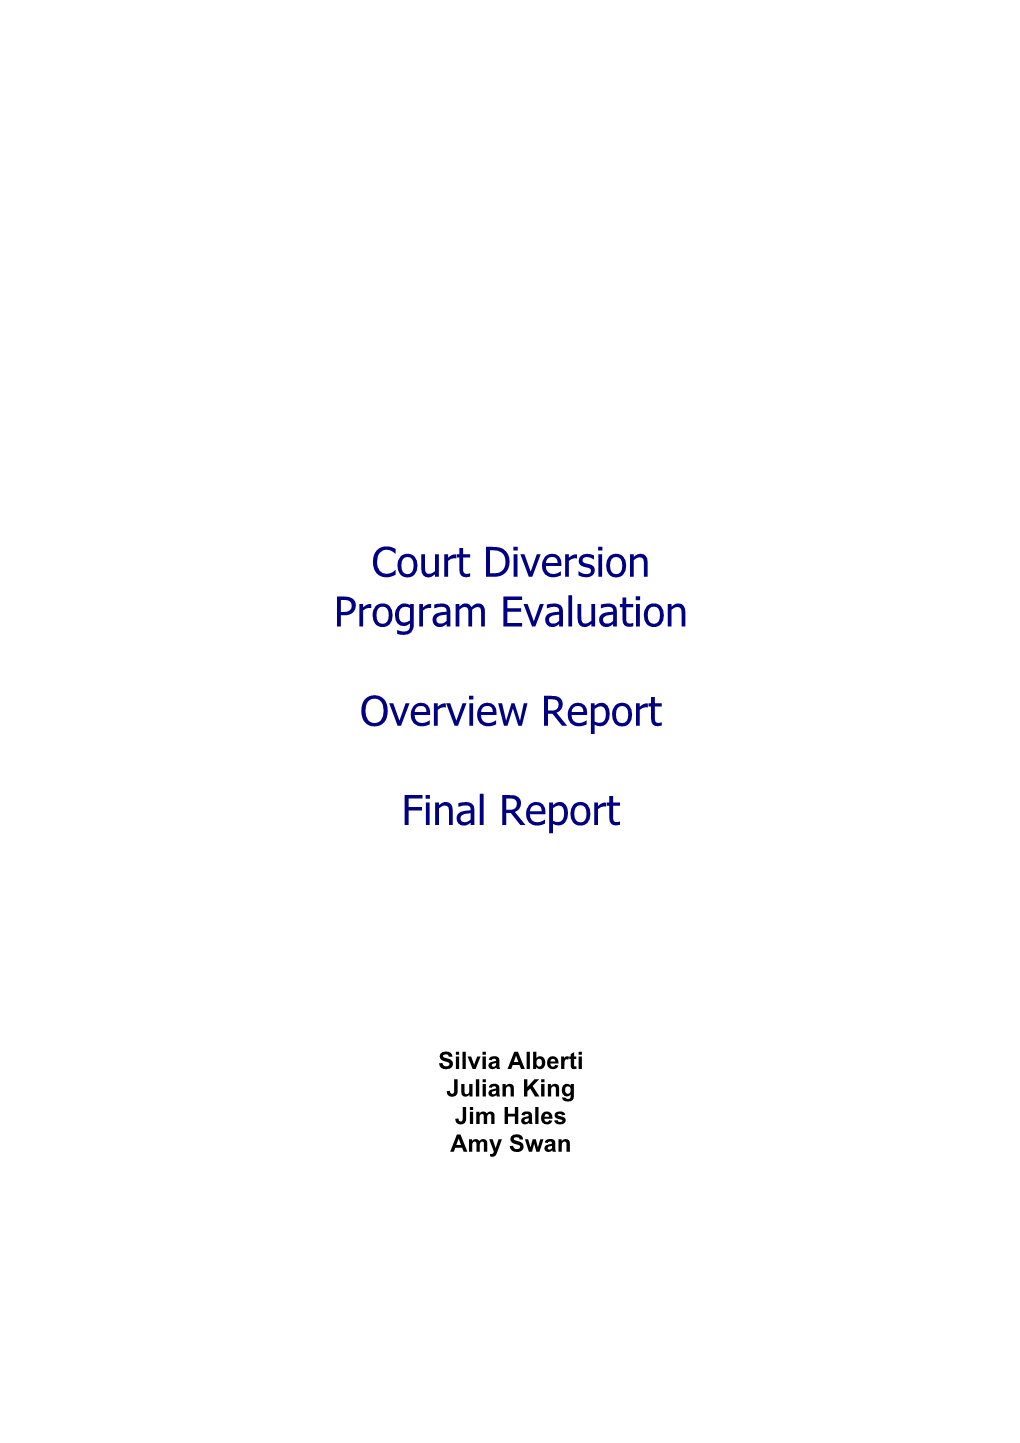 Court Diversion Program Evaluation